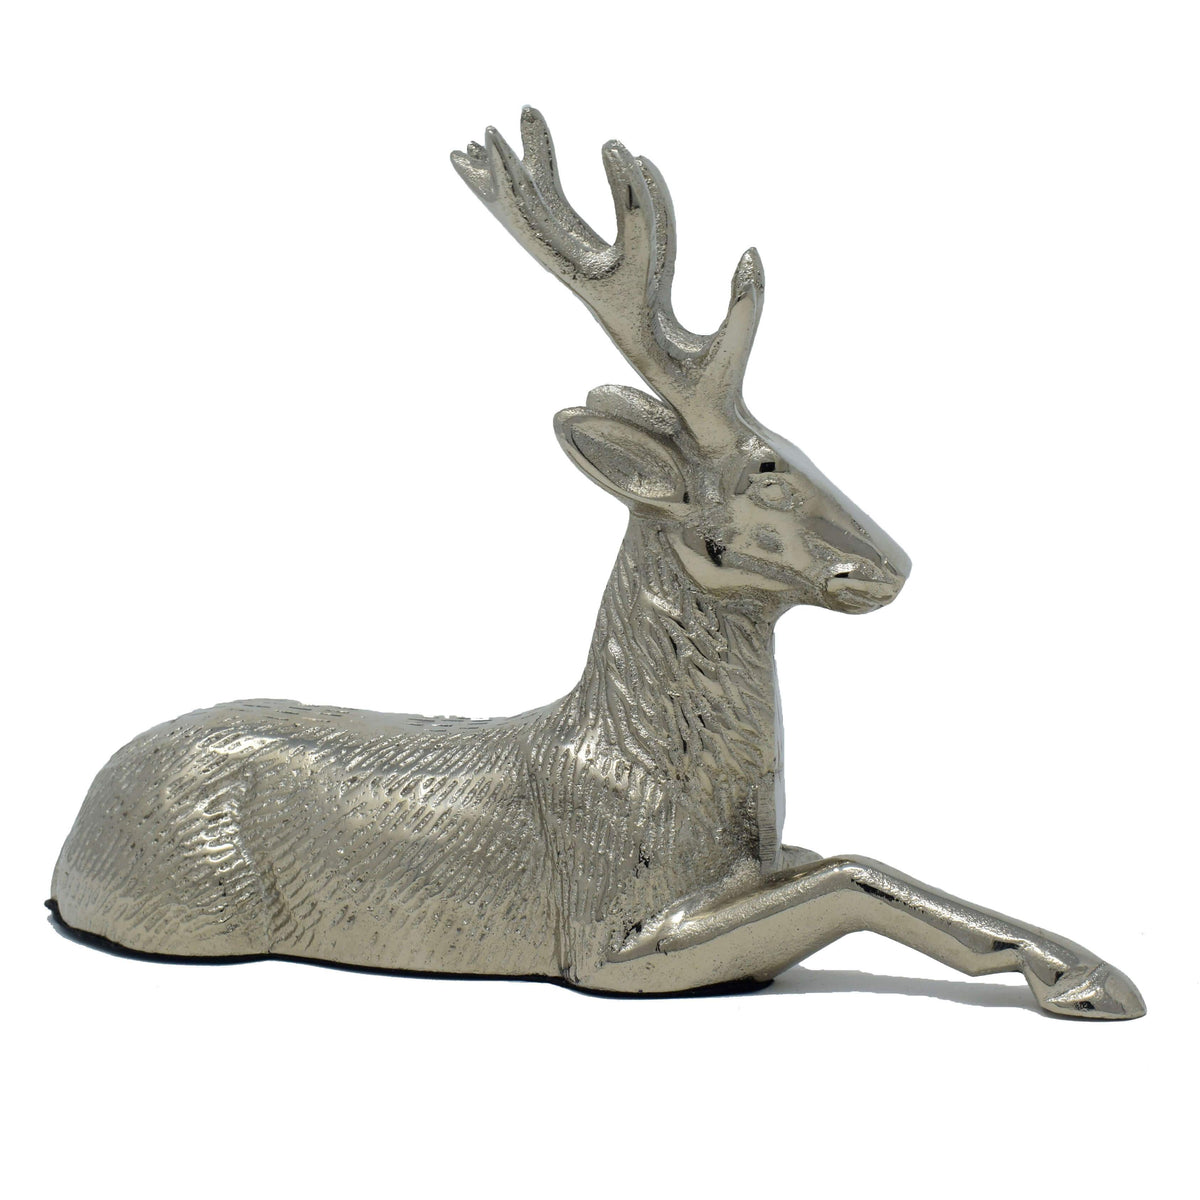 Hashcart Decorative Aluminium Deer Design Cloth Key Holder in Antique Look